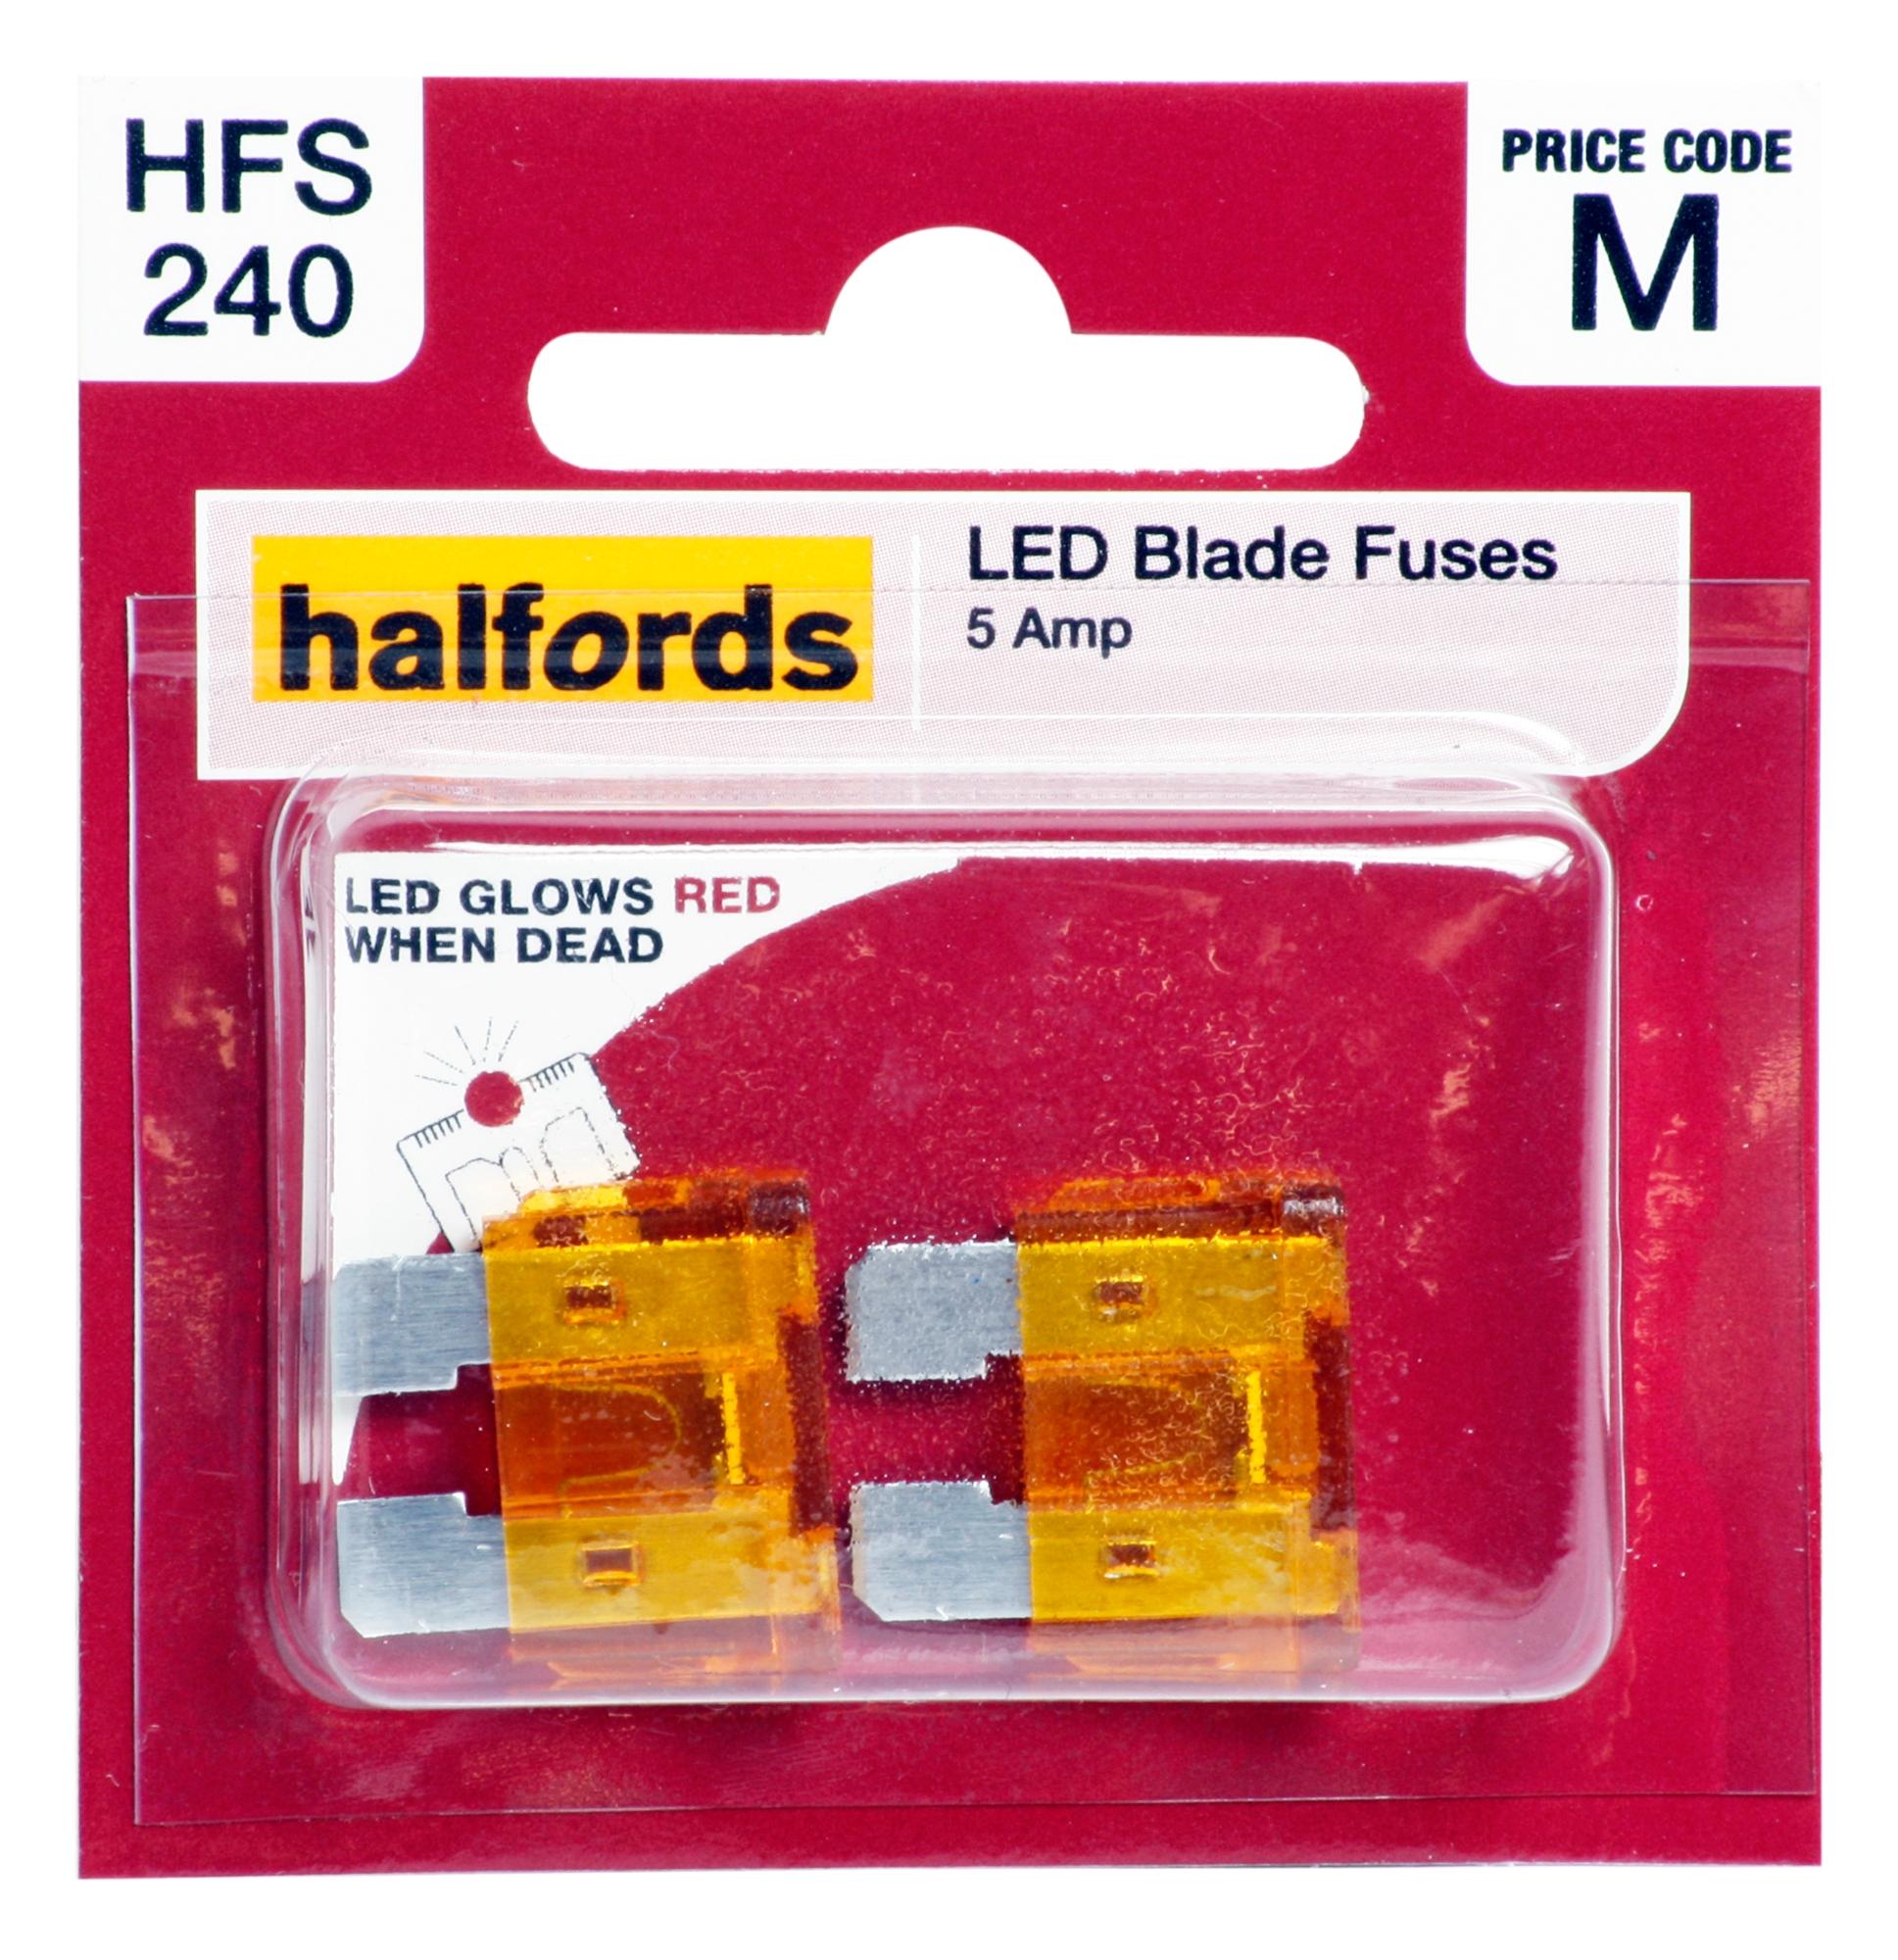 Halfords Led Blade Fuses 5 Amp (Hfs240)